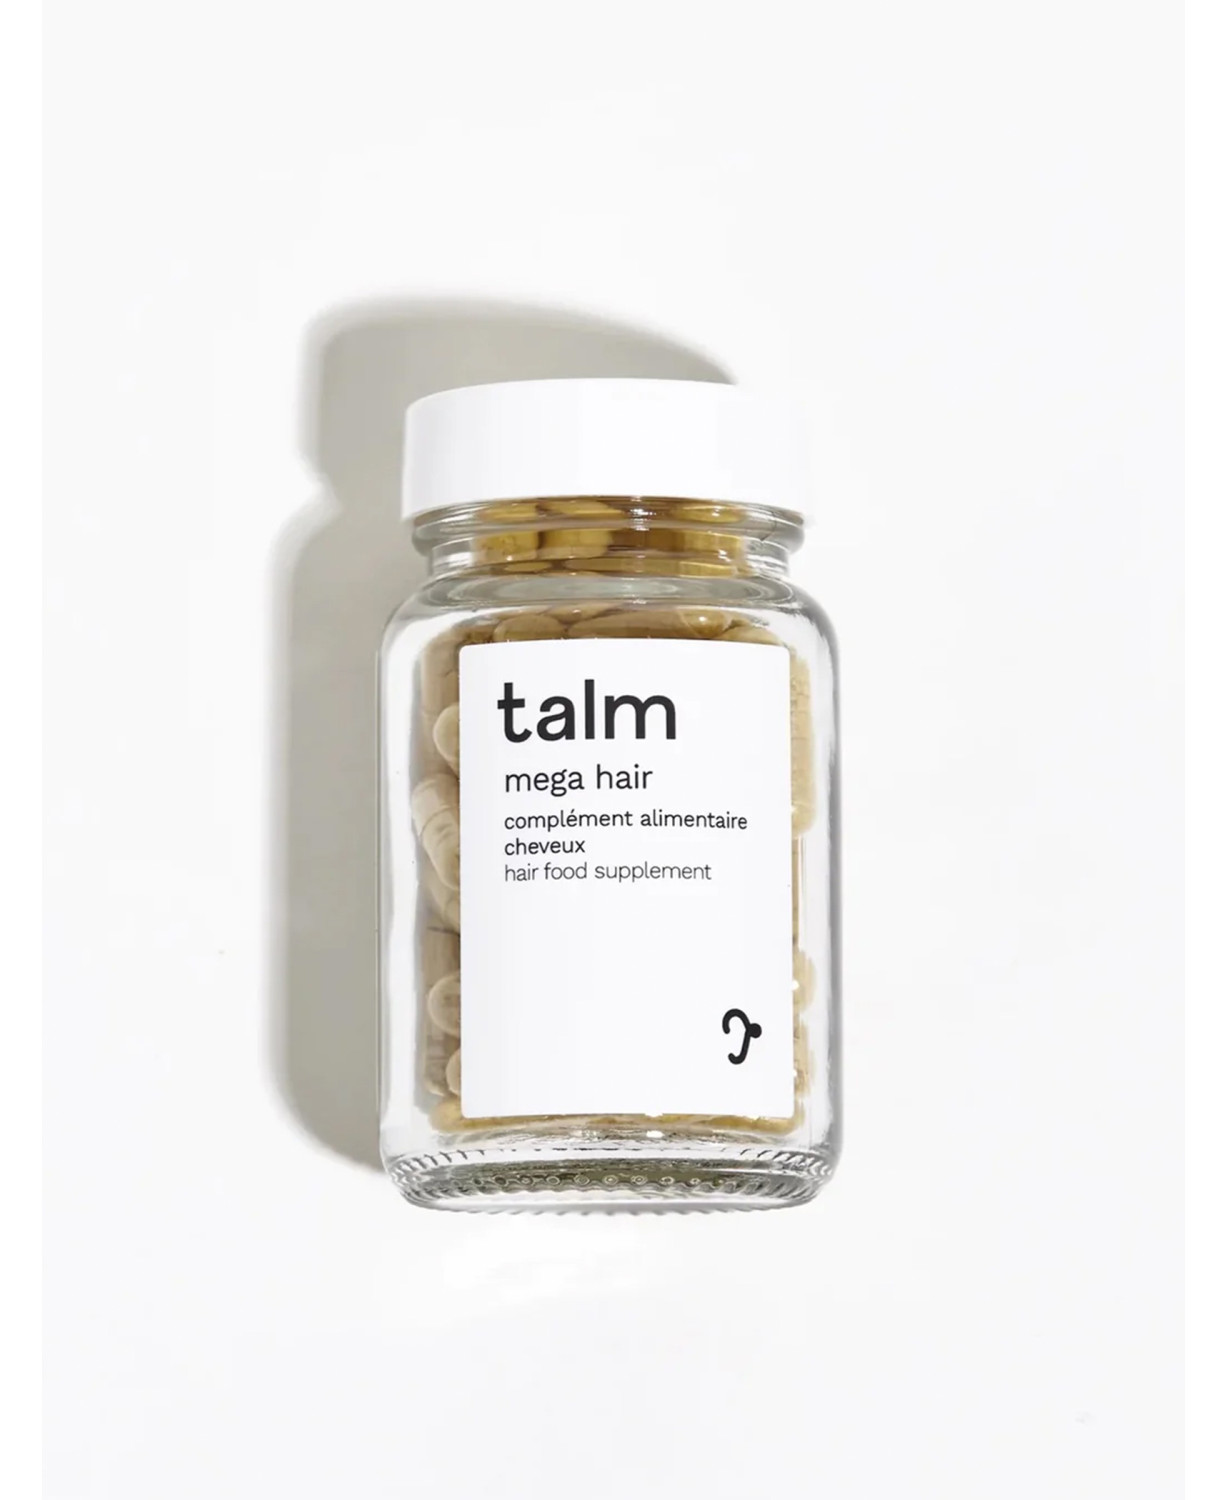 Talm hair food supplements